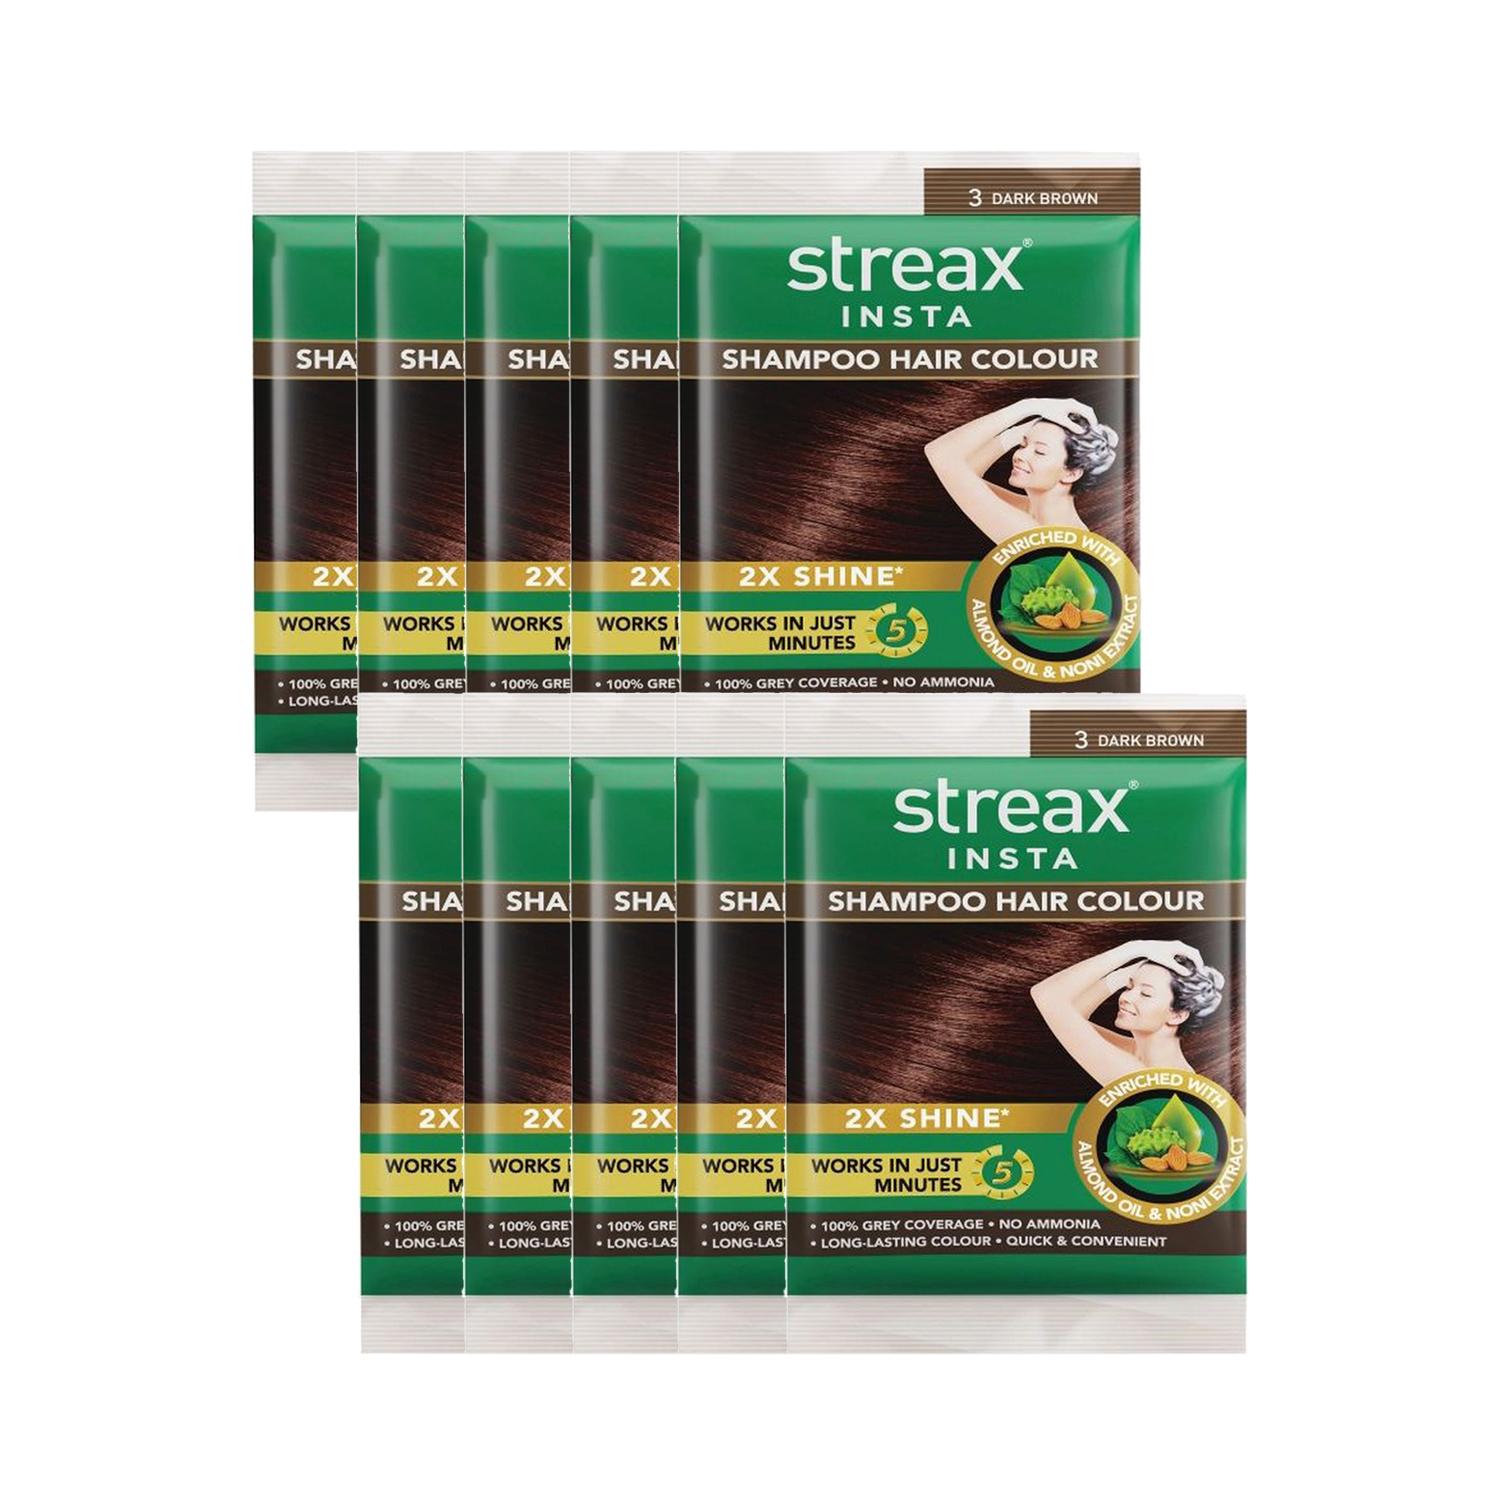 Streax Insta Shampoo Hair Colour - Dark Brown (18ml) (Pack of 10) Combo